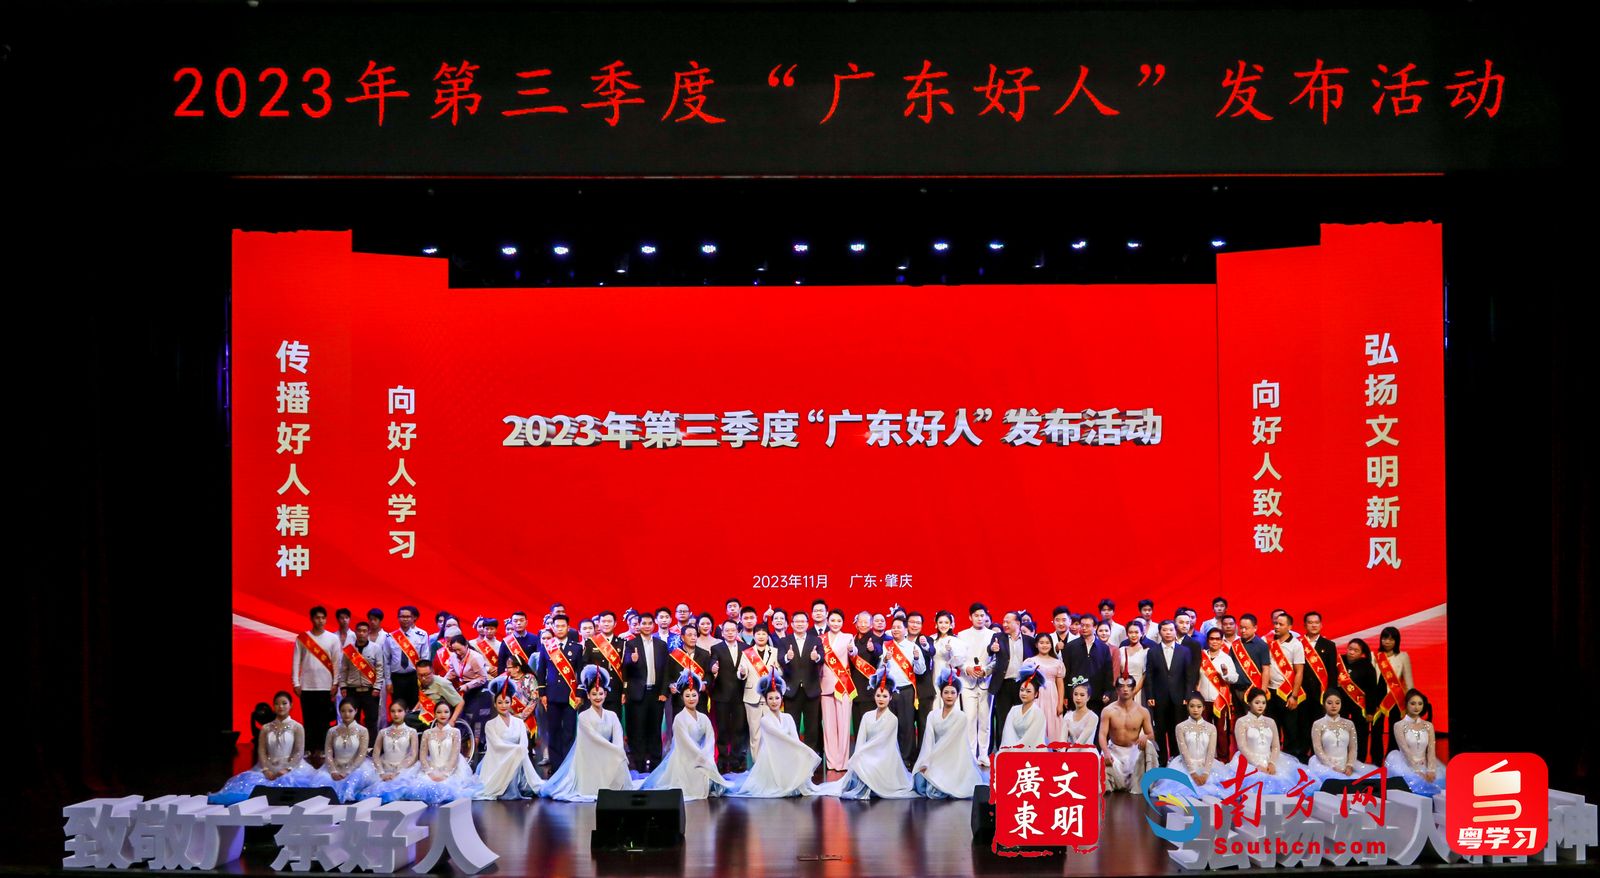 2023年第三季度“广东好人”发布活动成功举办。